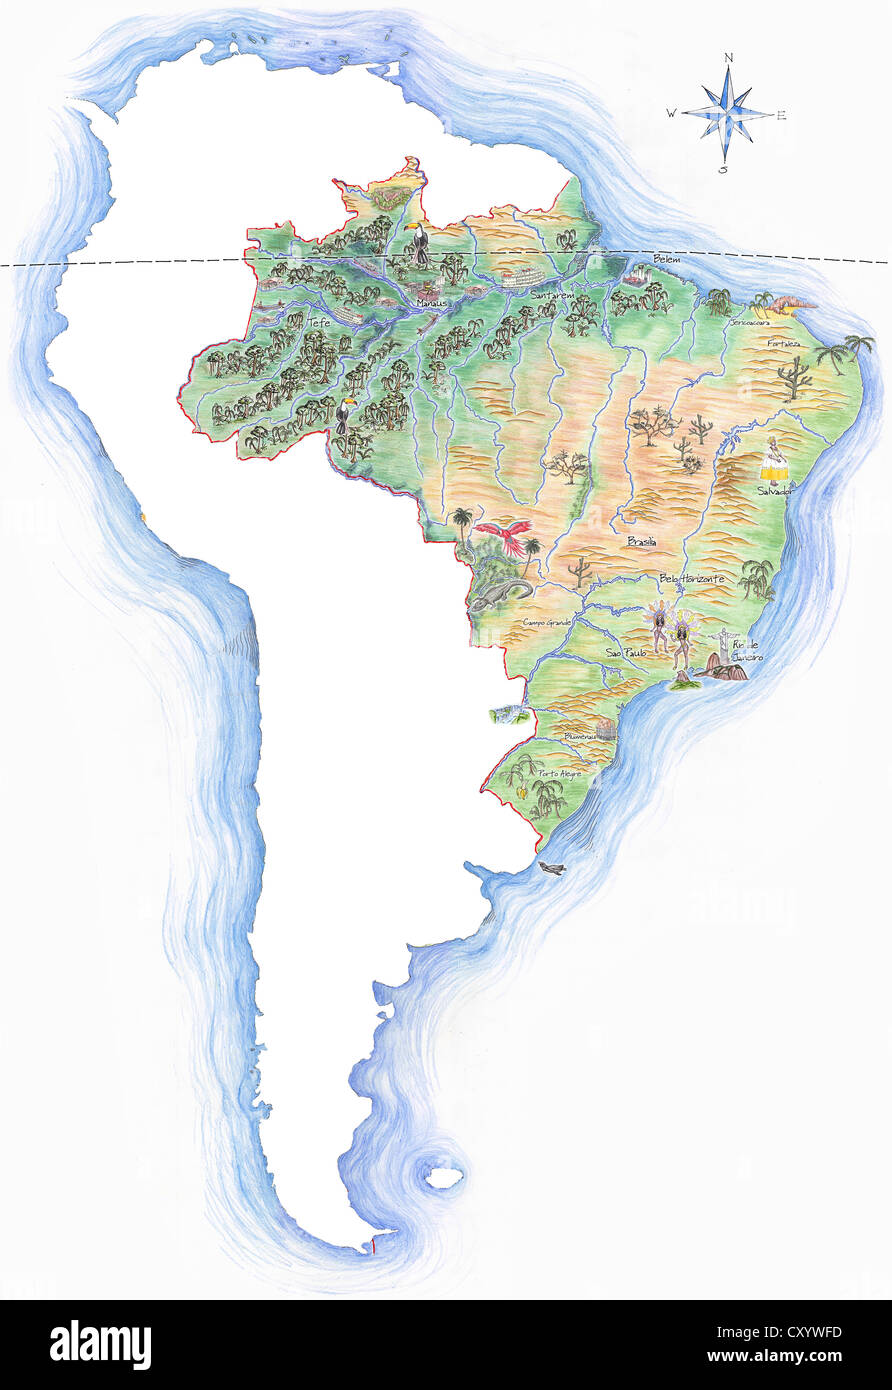 Altamente dettagliate disegnati a mano mappa del Brasile entro la sagoma del sud america con una rosa dei venti e l'equatore Foto Stock